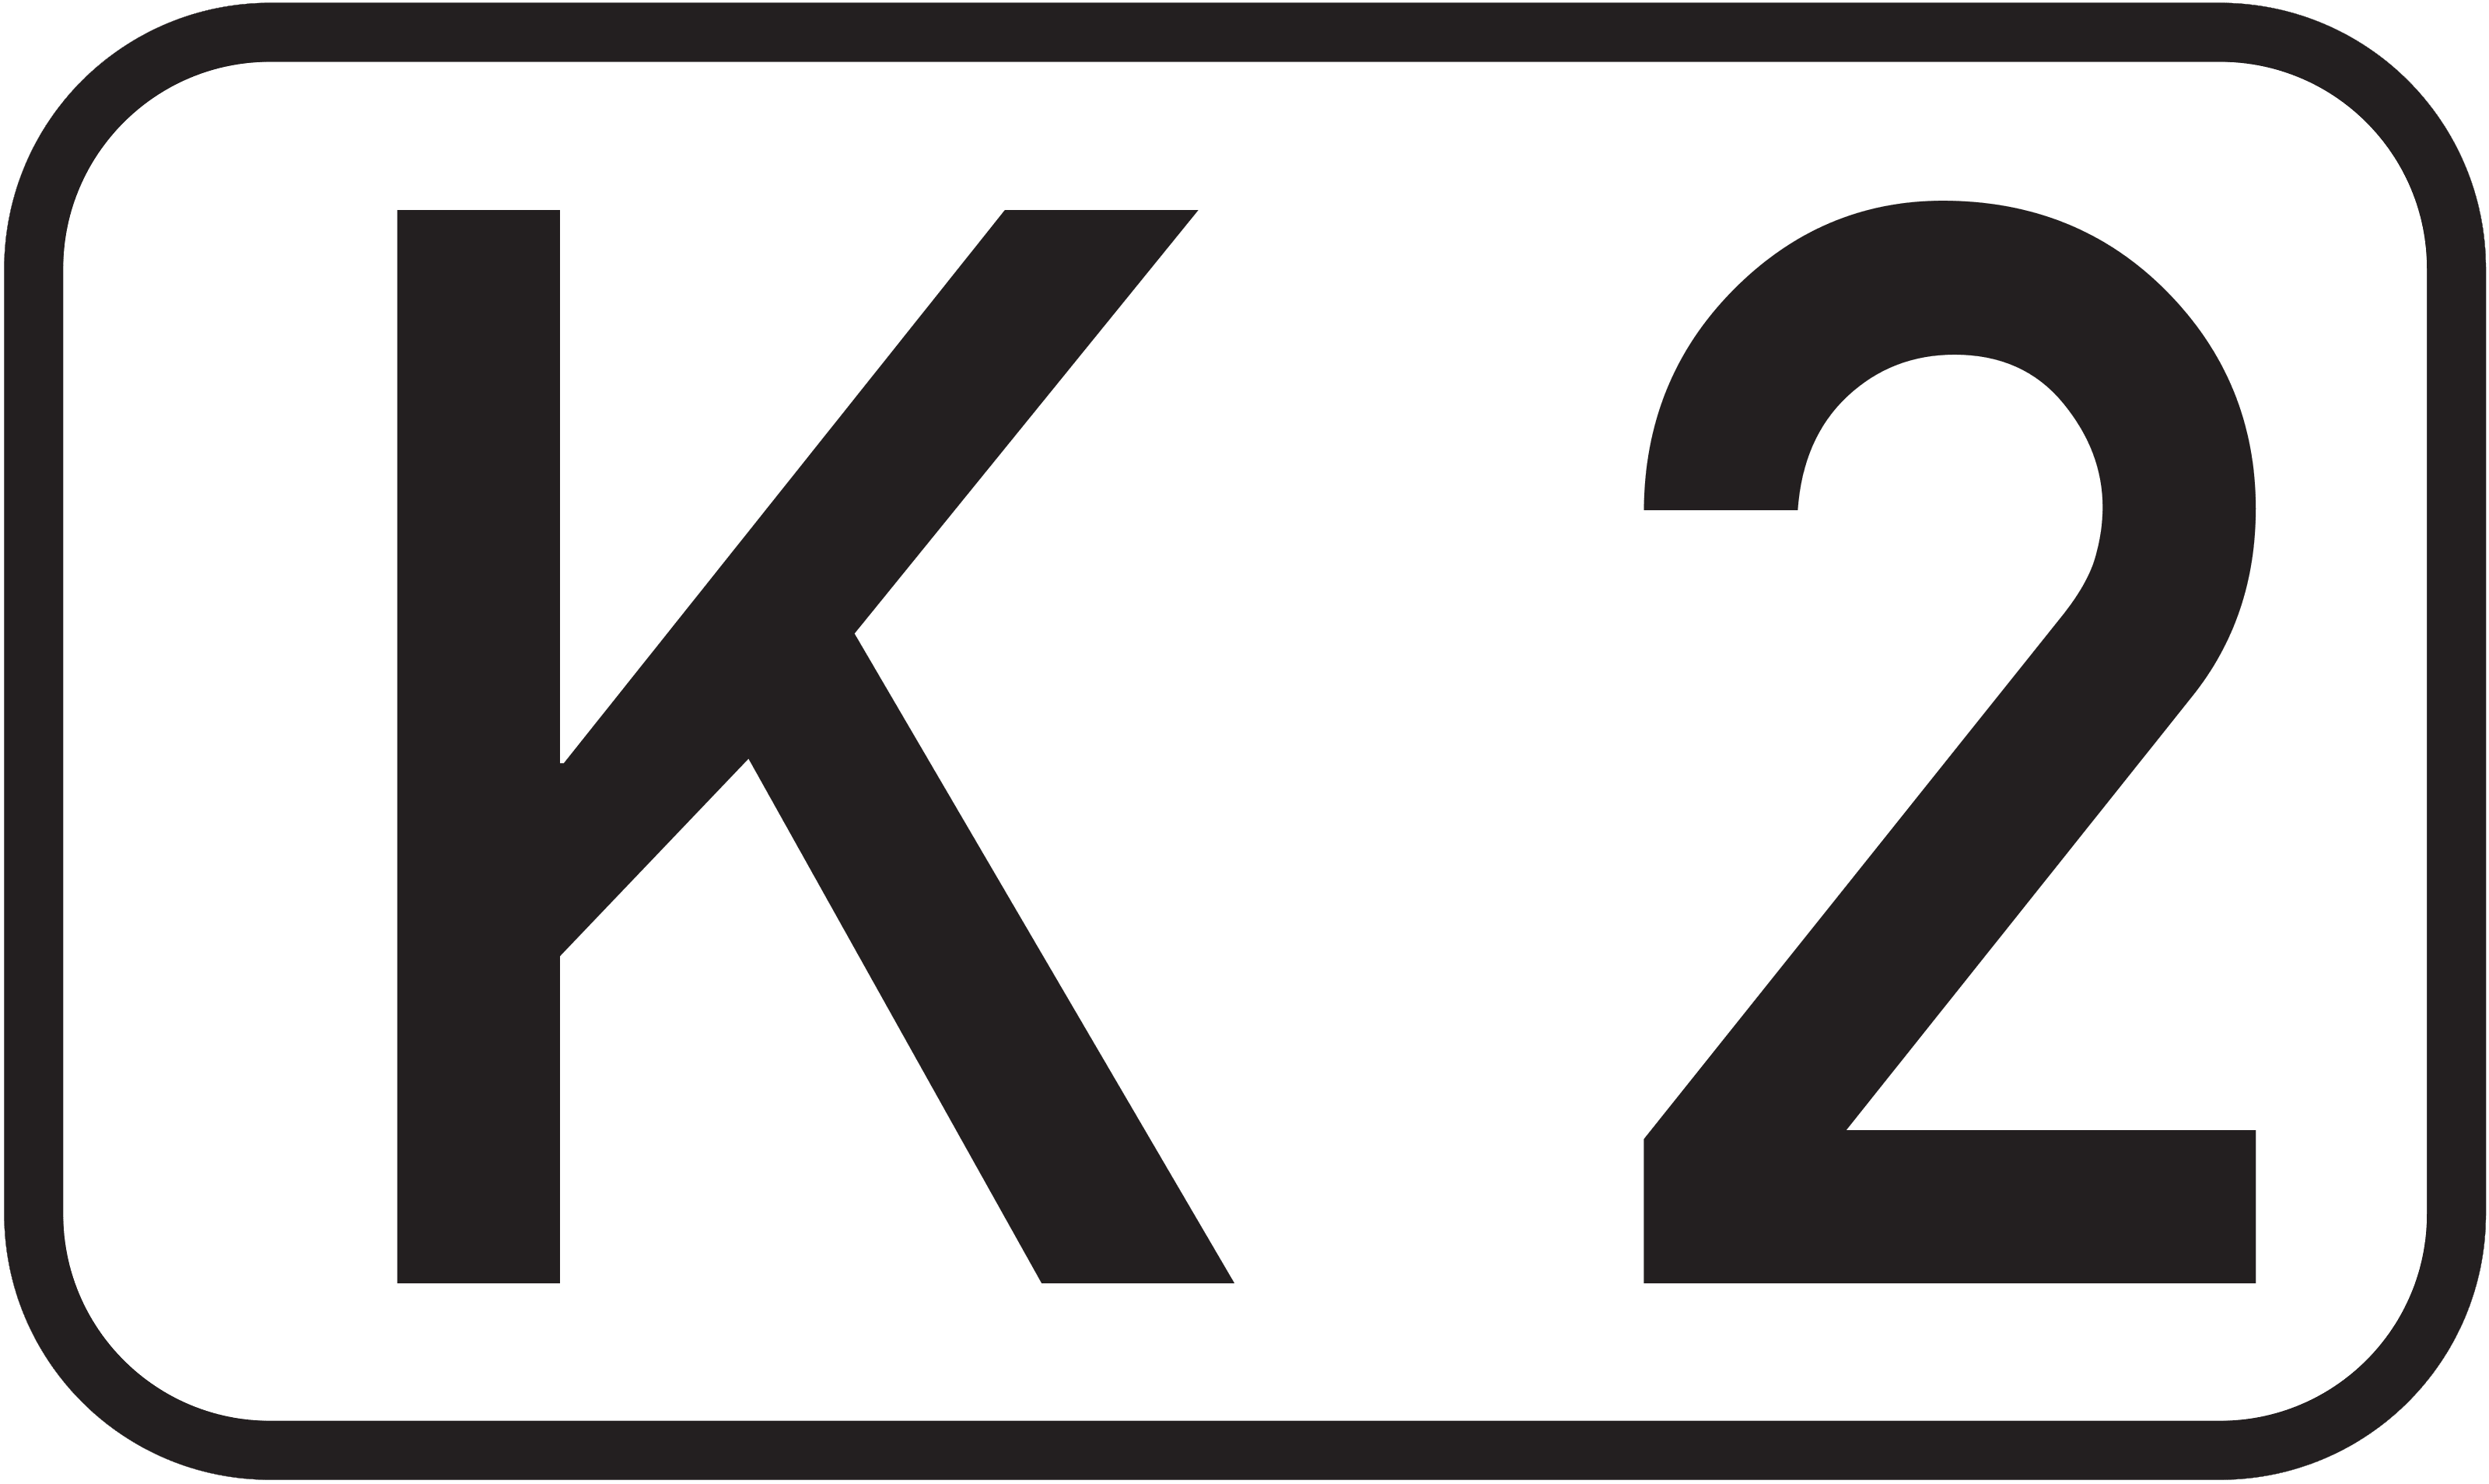 Bundesstraße K 2